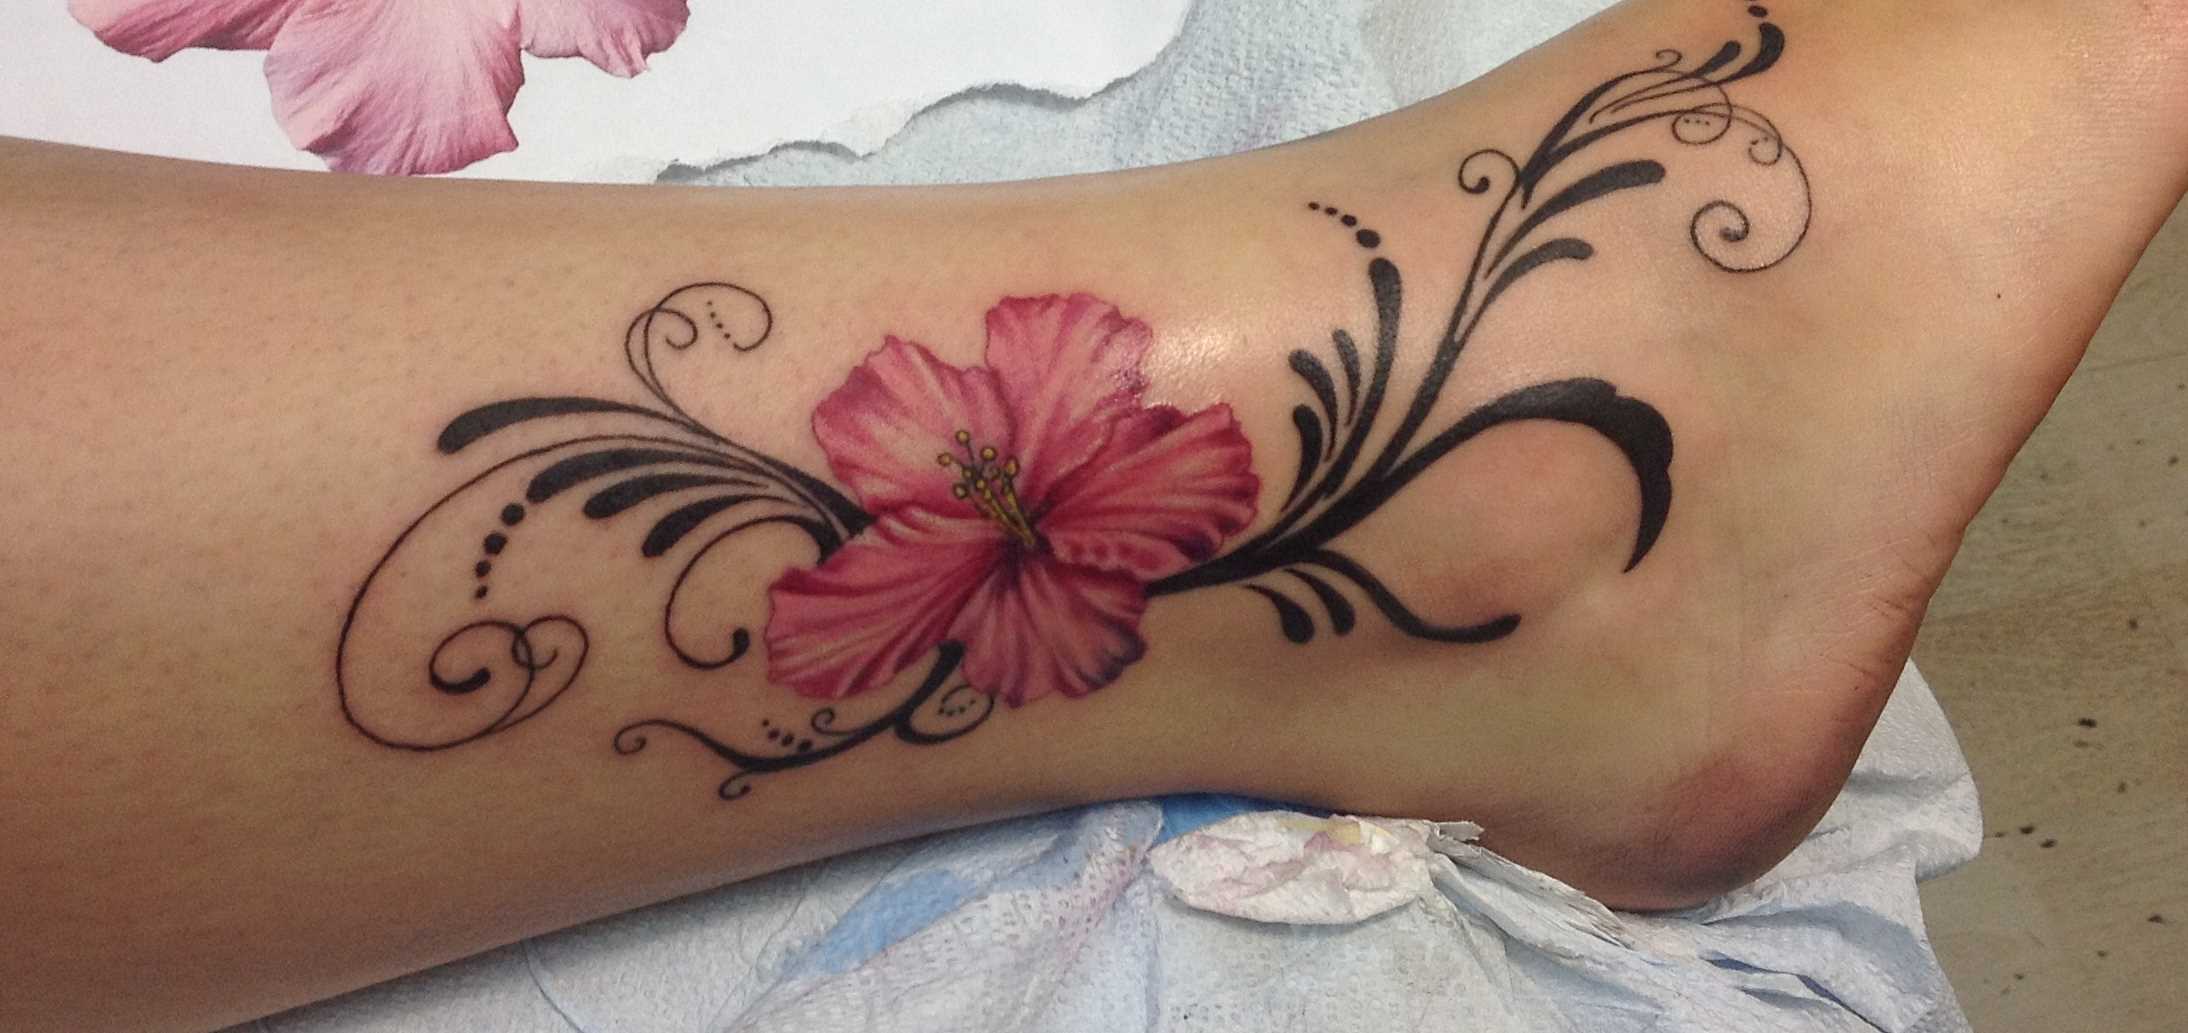 Tatuagem no pé da menina - flor de hibisco